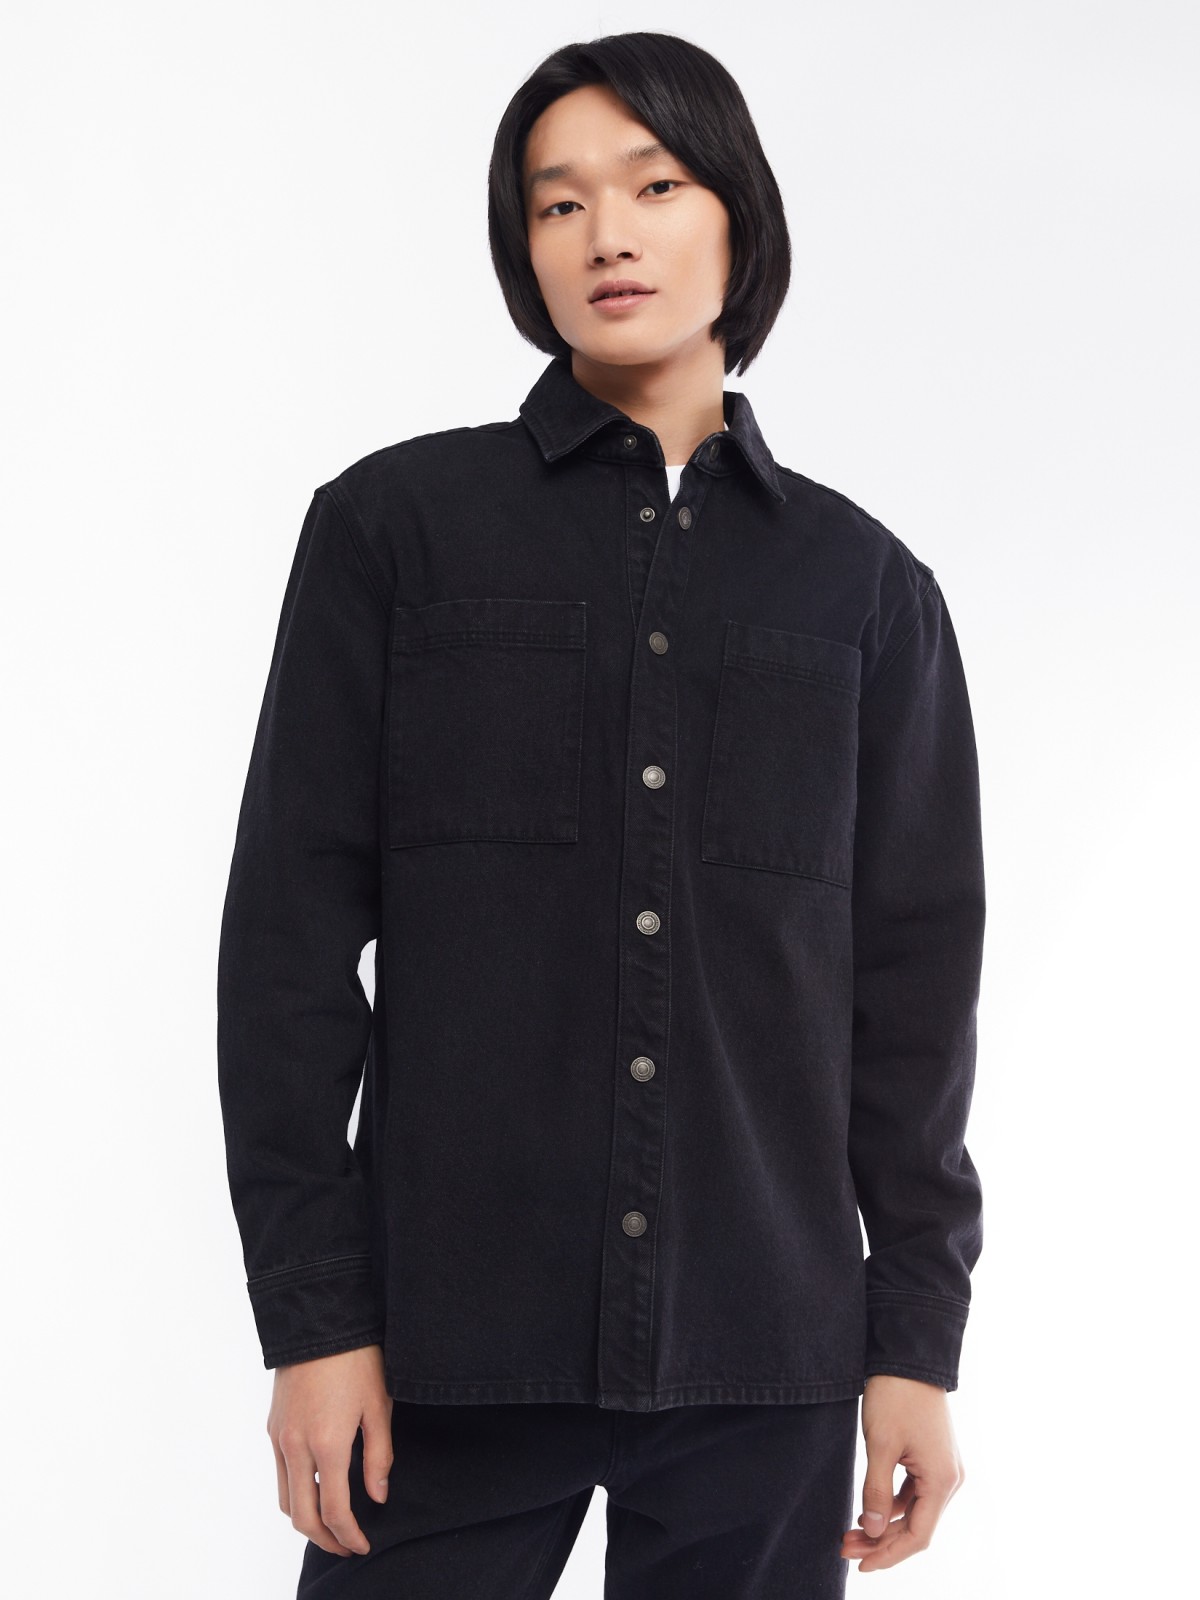 Джинсовая куртка-рубашка на кнопках zolla 014125D0V023, цвет черный, размер S - фото 3